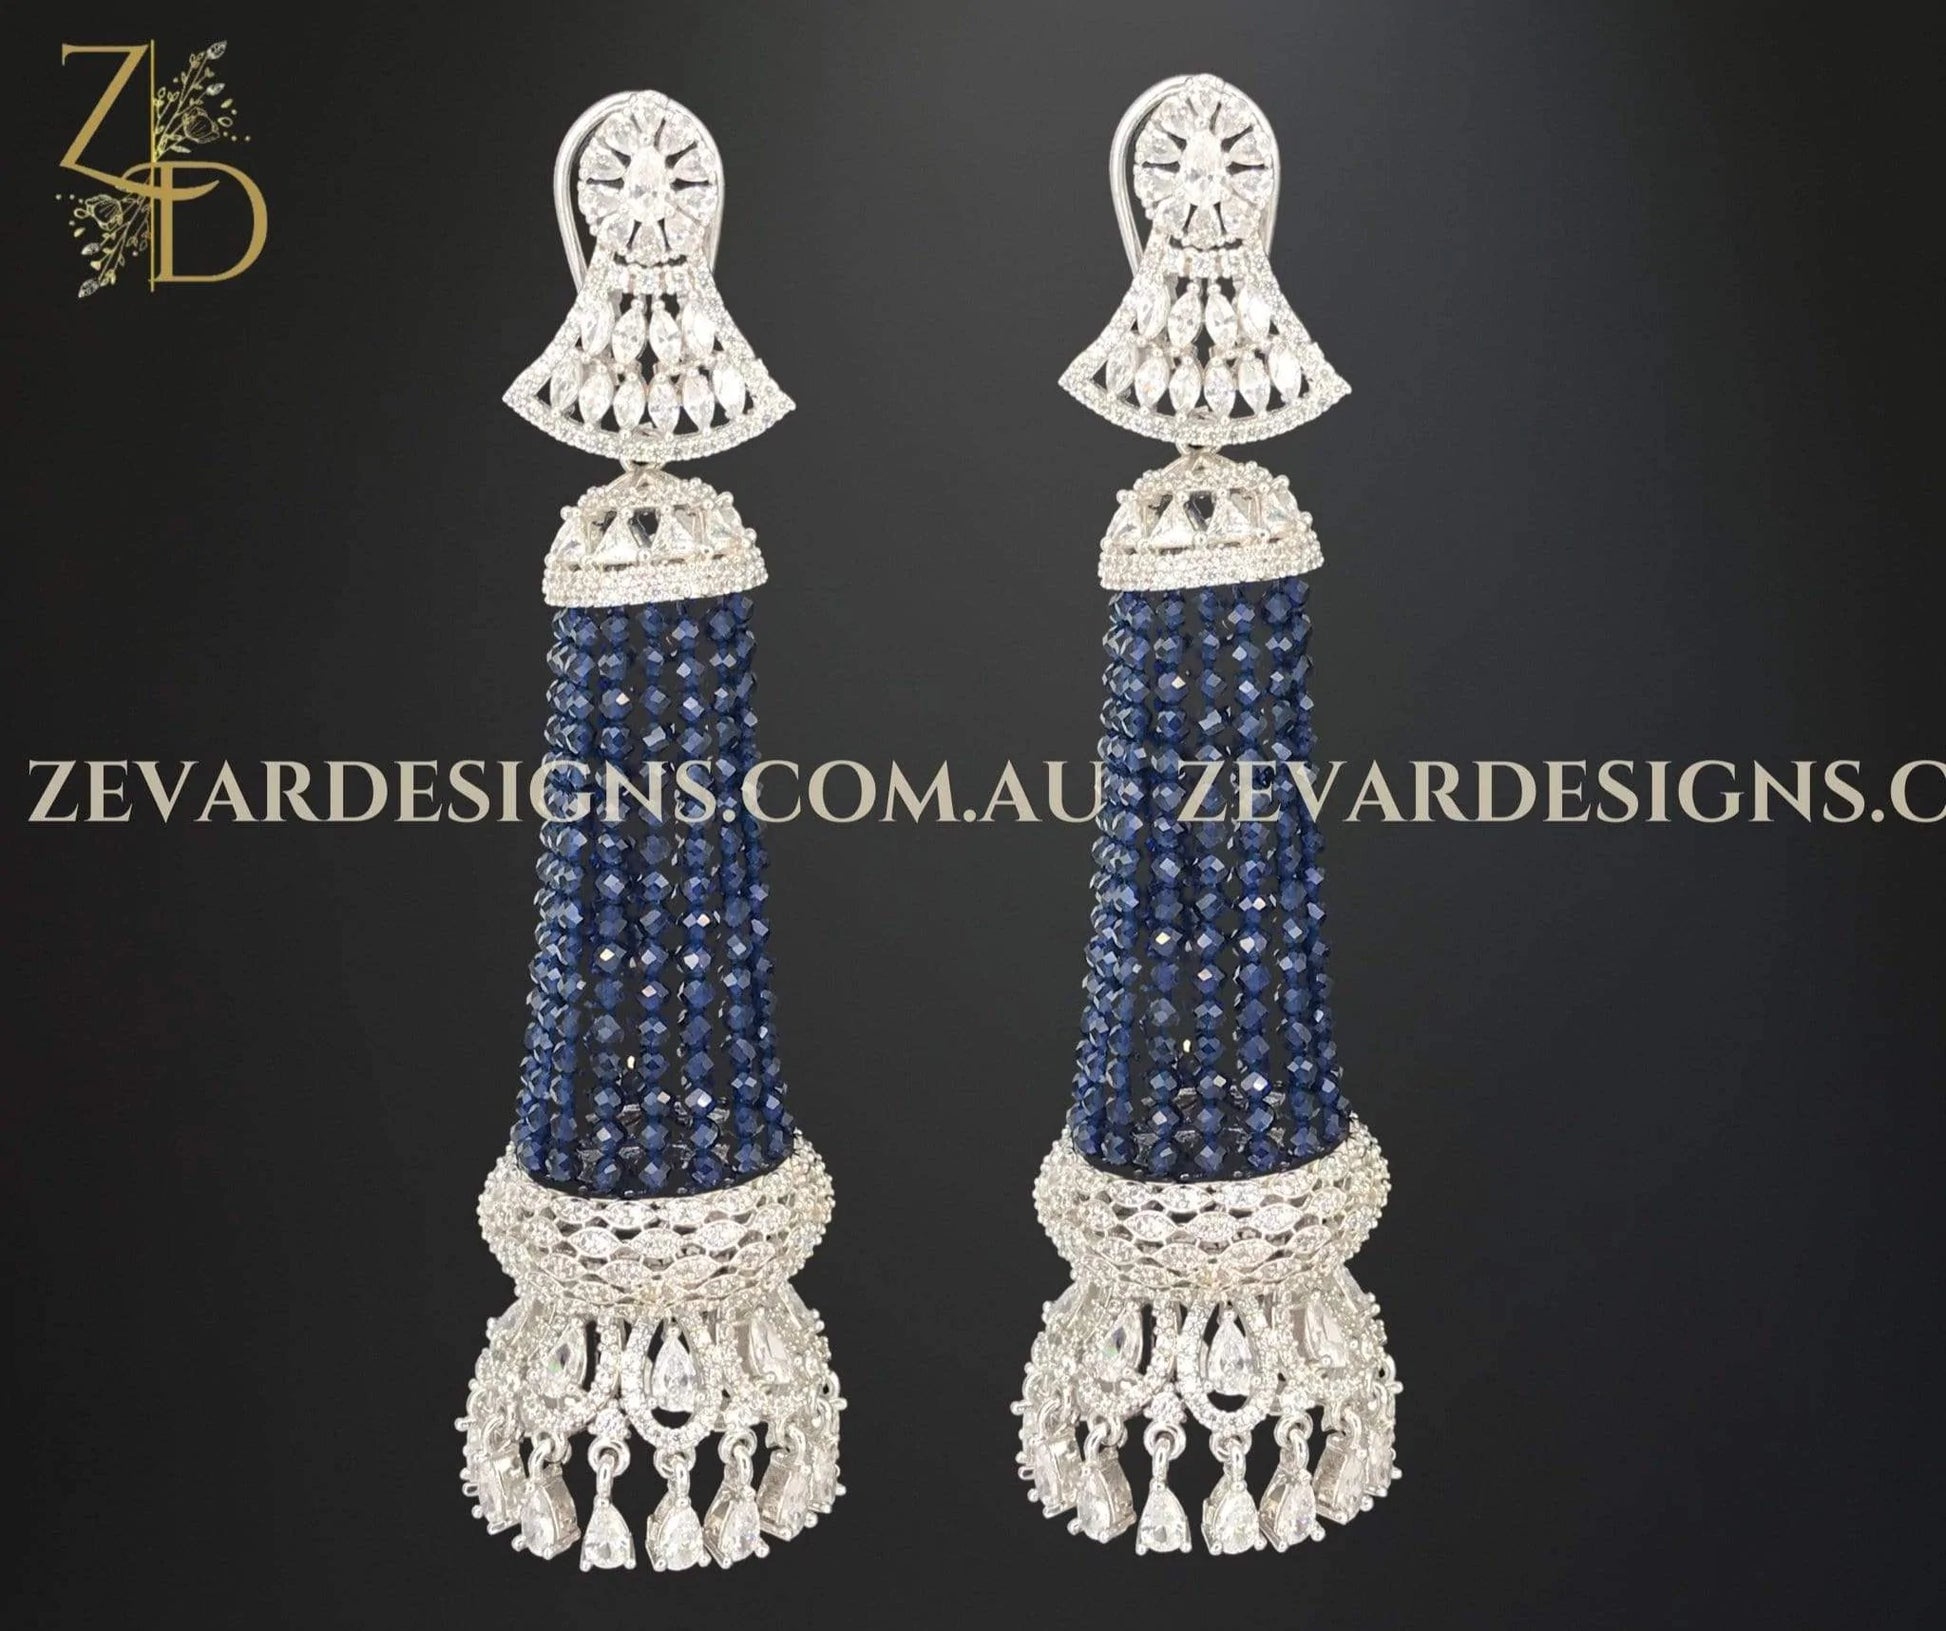 Zevar Designs Zircon Earrings Chandelier Earrings in Silver and Blue